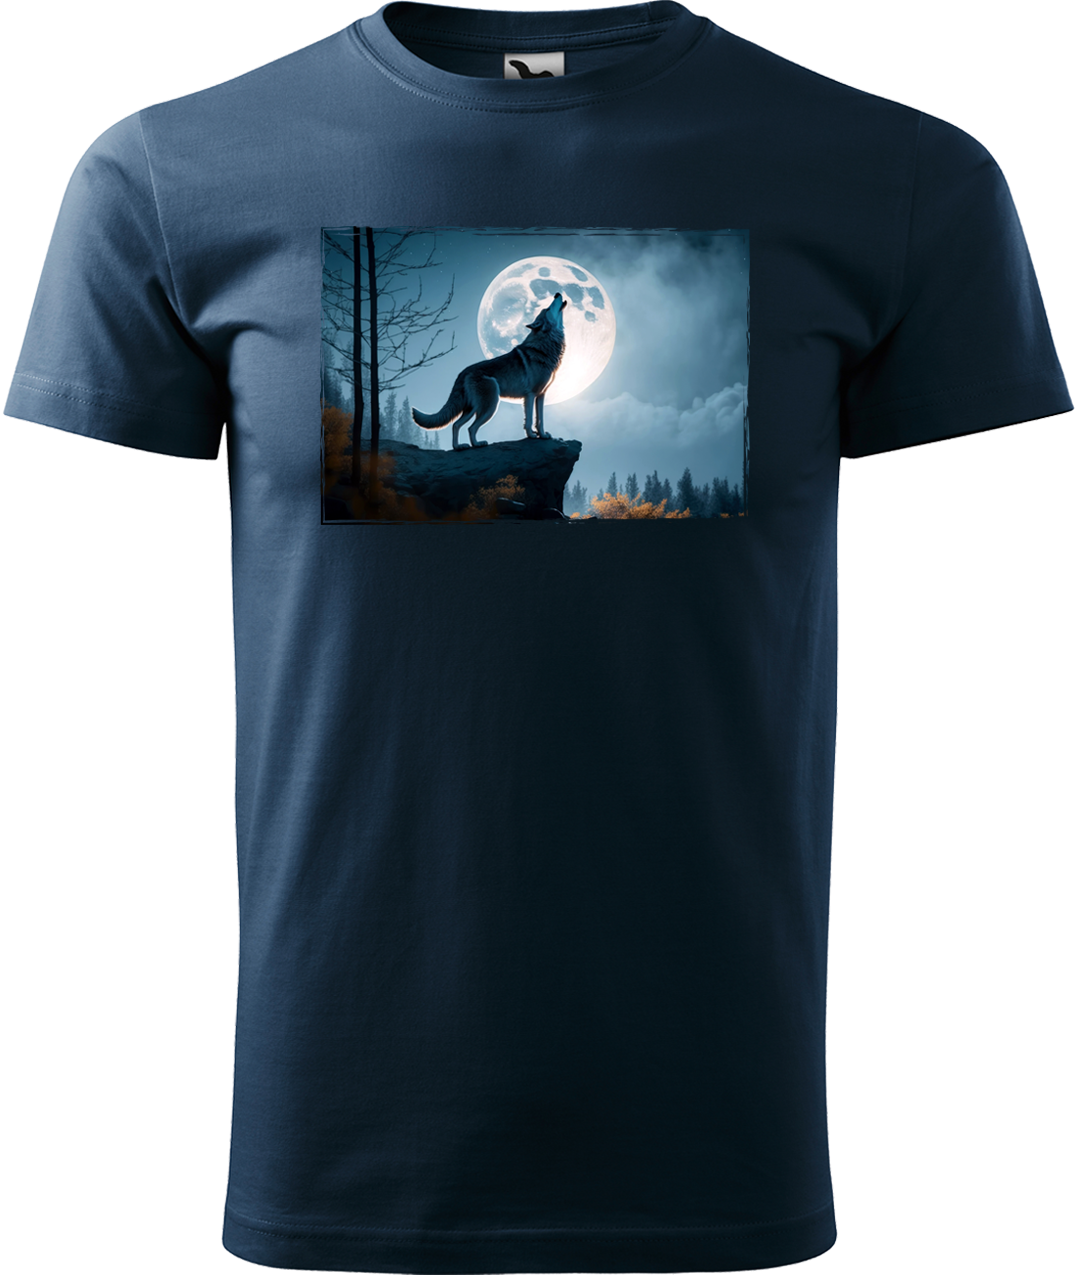 Pánské tričko s vlkem - Vyjící vlk Velikost: 4XL, Barva: Námořní modrá (02)